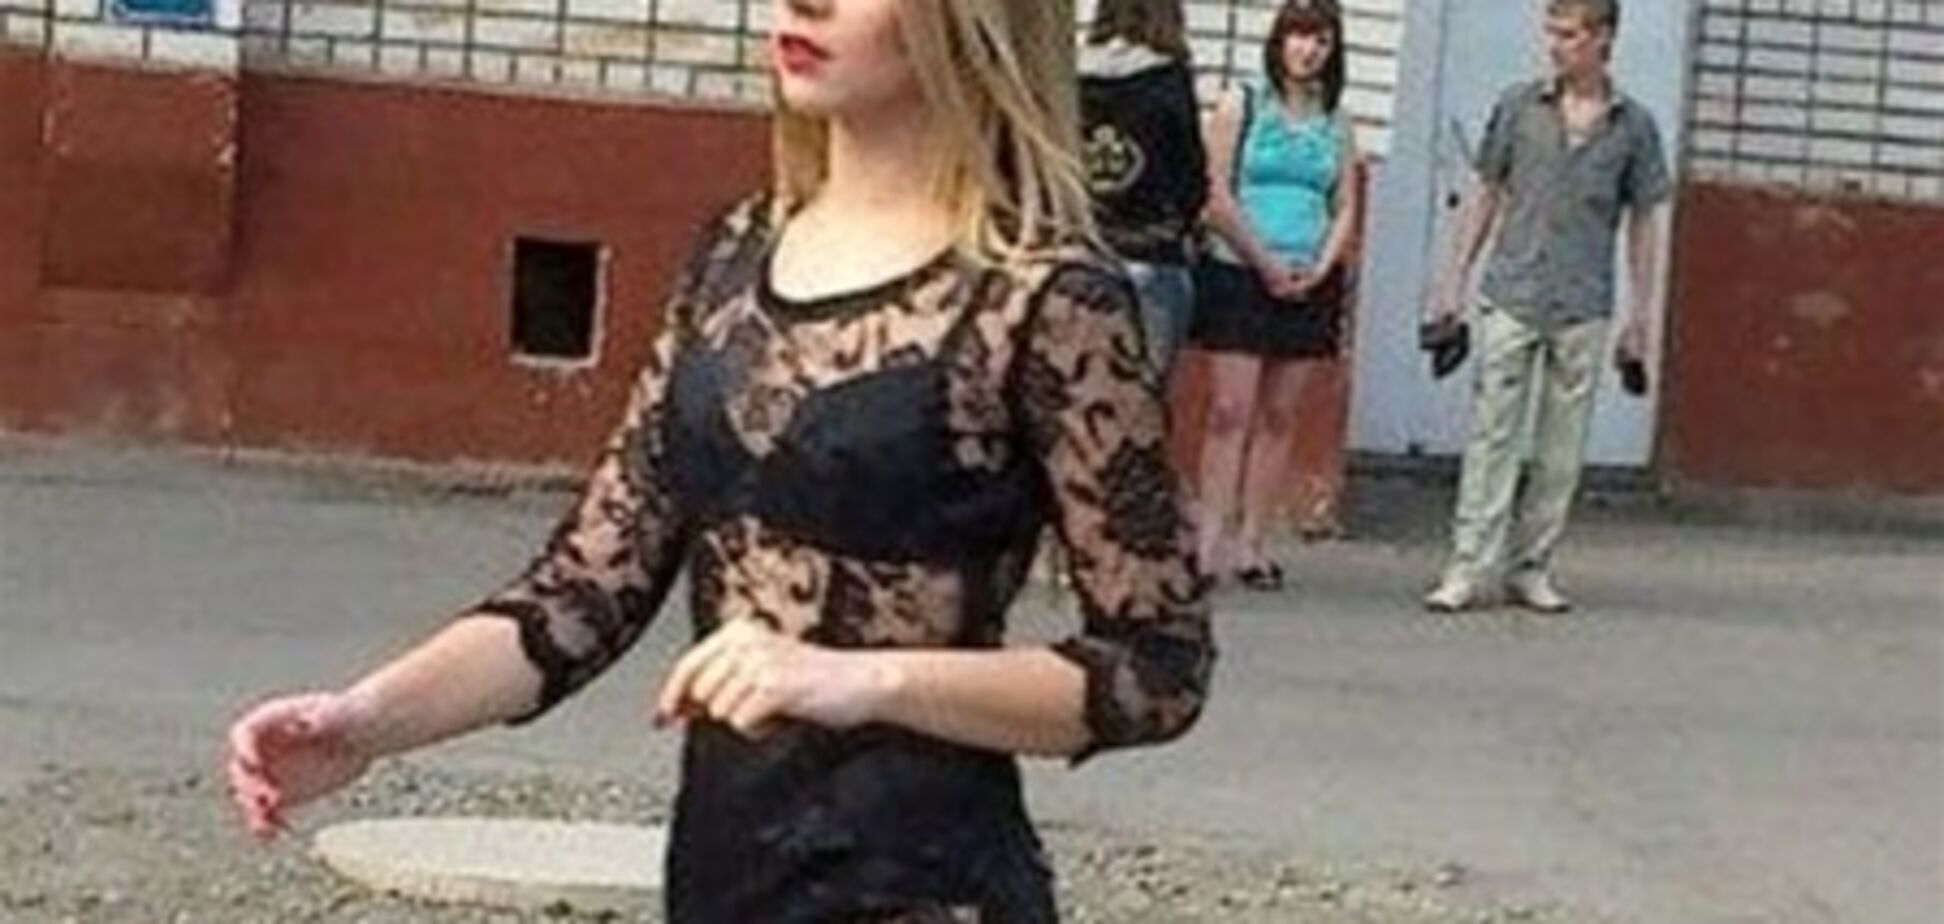 Прозрачное платье выпускницы шокировало интернет. Фото